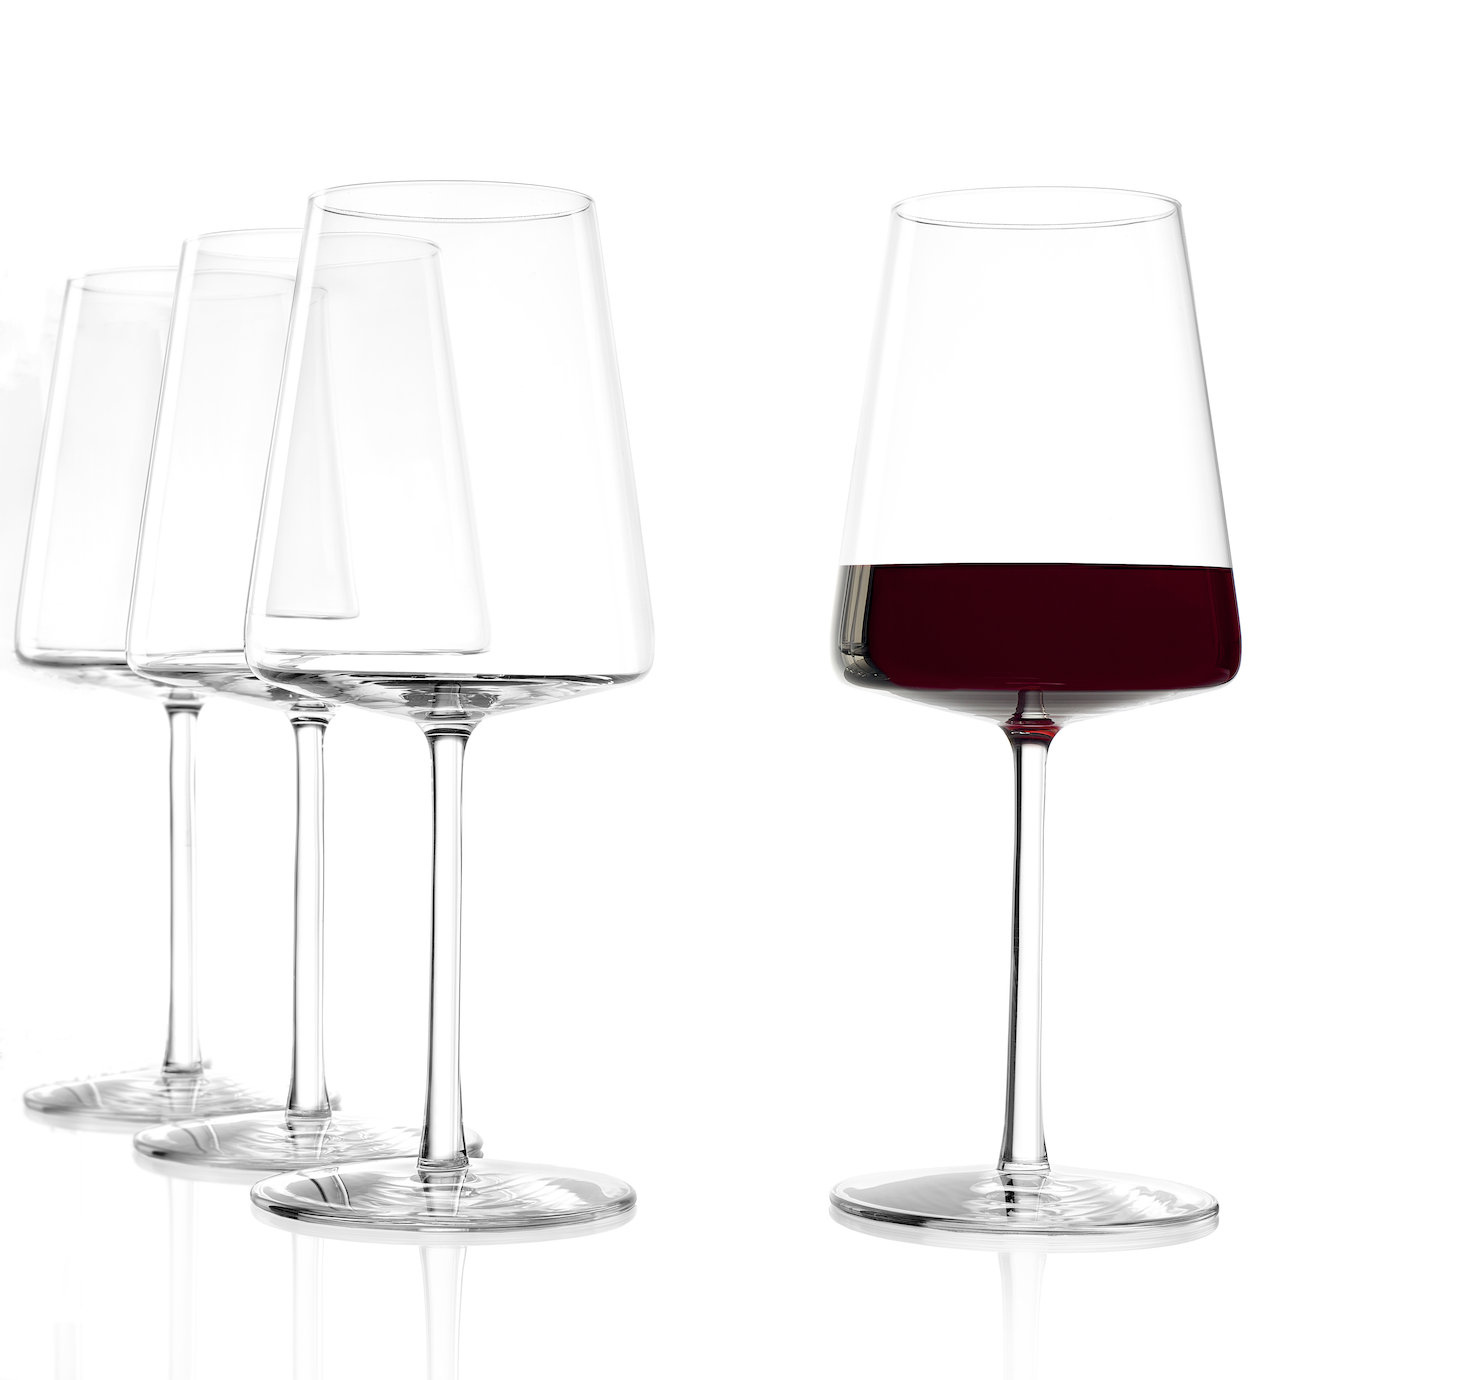 https://assets.wfcdn.com/im/59301608/compr-r85/1645/164531590/power-18-oz-clear-wine-glass.jpg